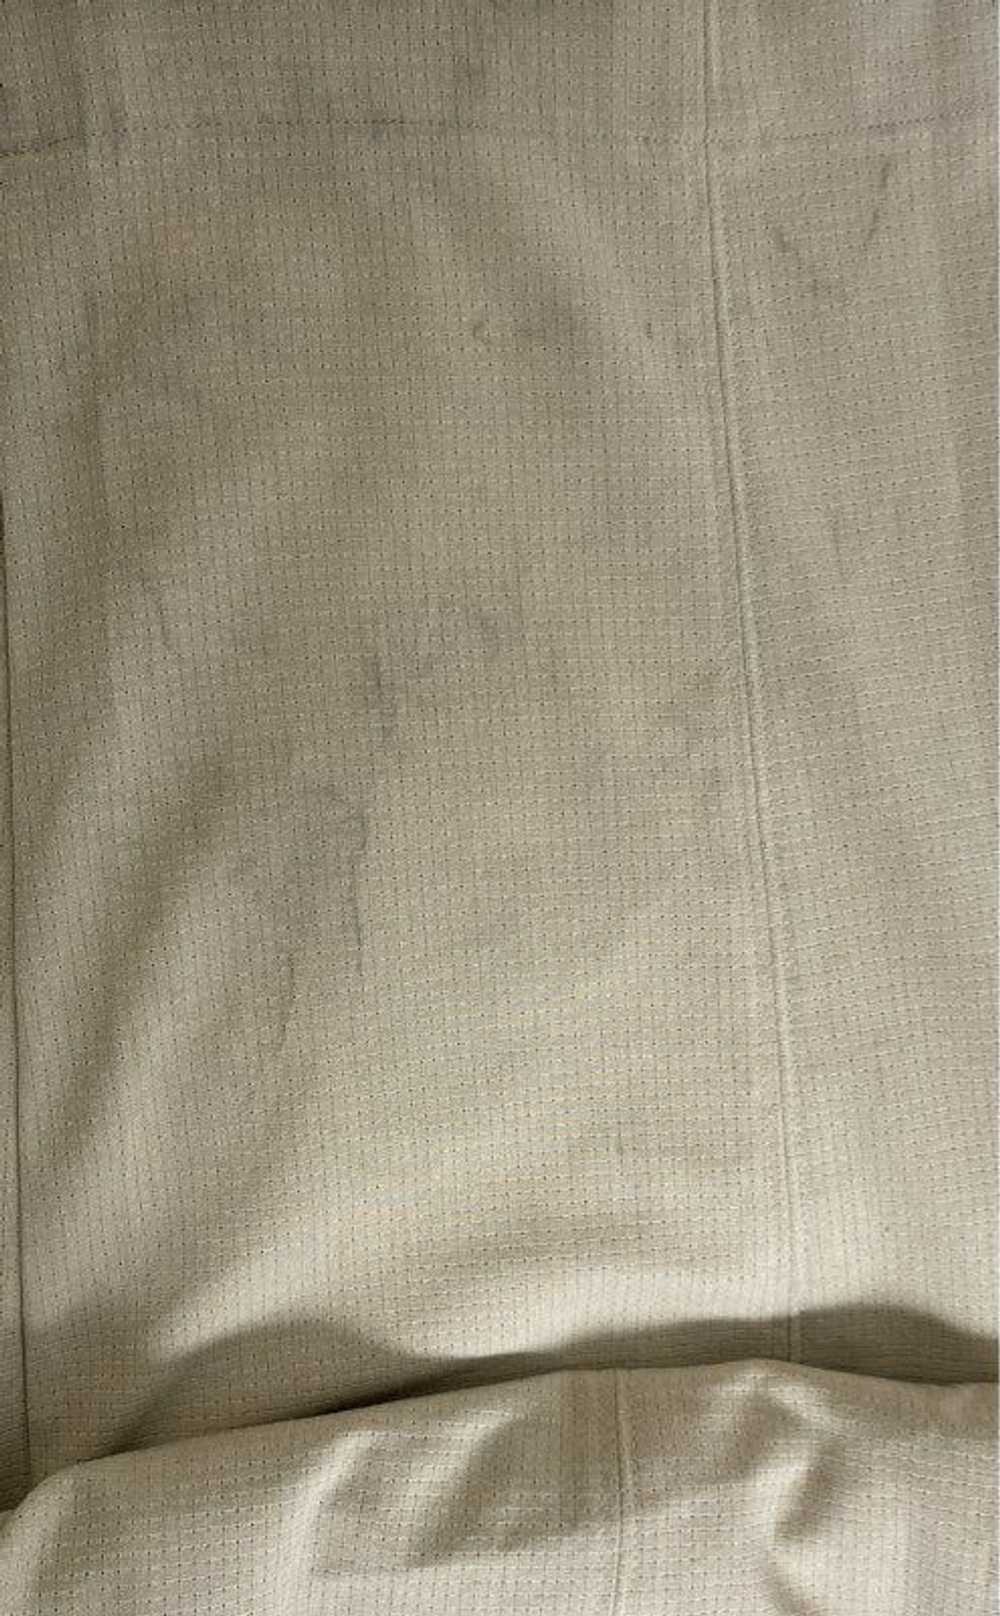 Lululemon Ivory Jump Suit - Size X Large - image 5